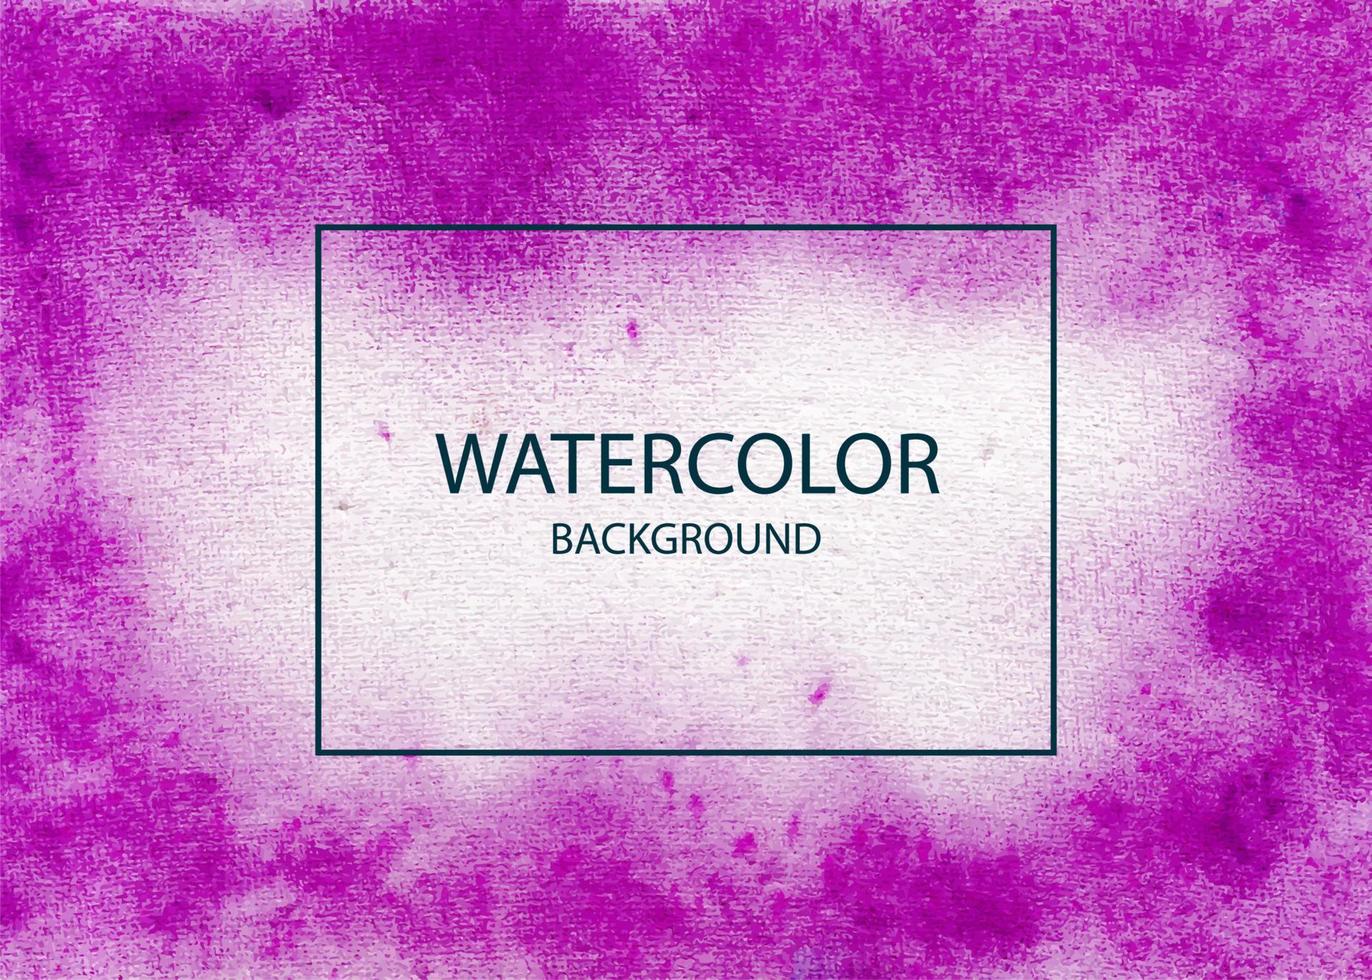 Handmade Watercolor Texture Background Vector, Colorful handmade Abstract Background vector